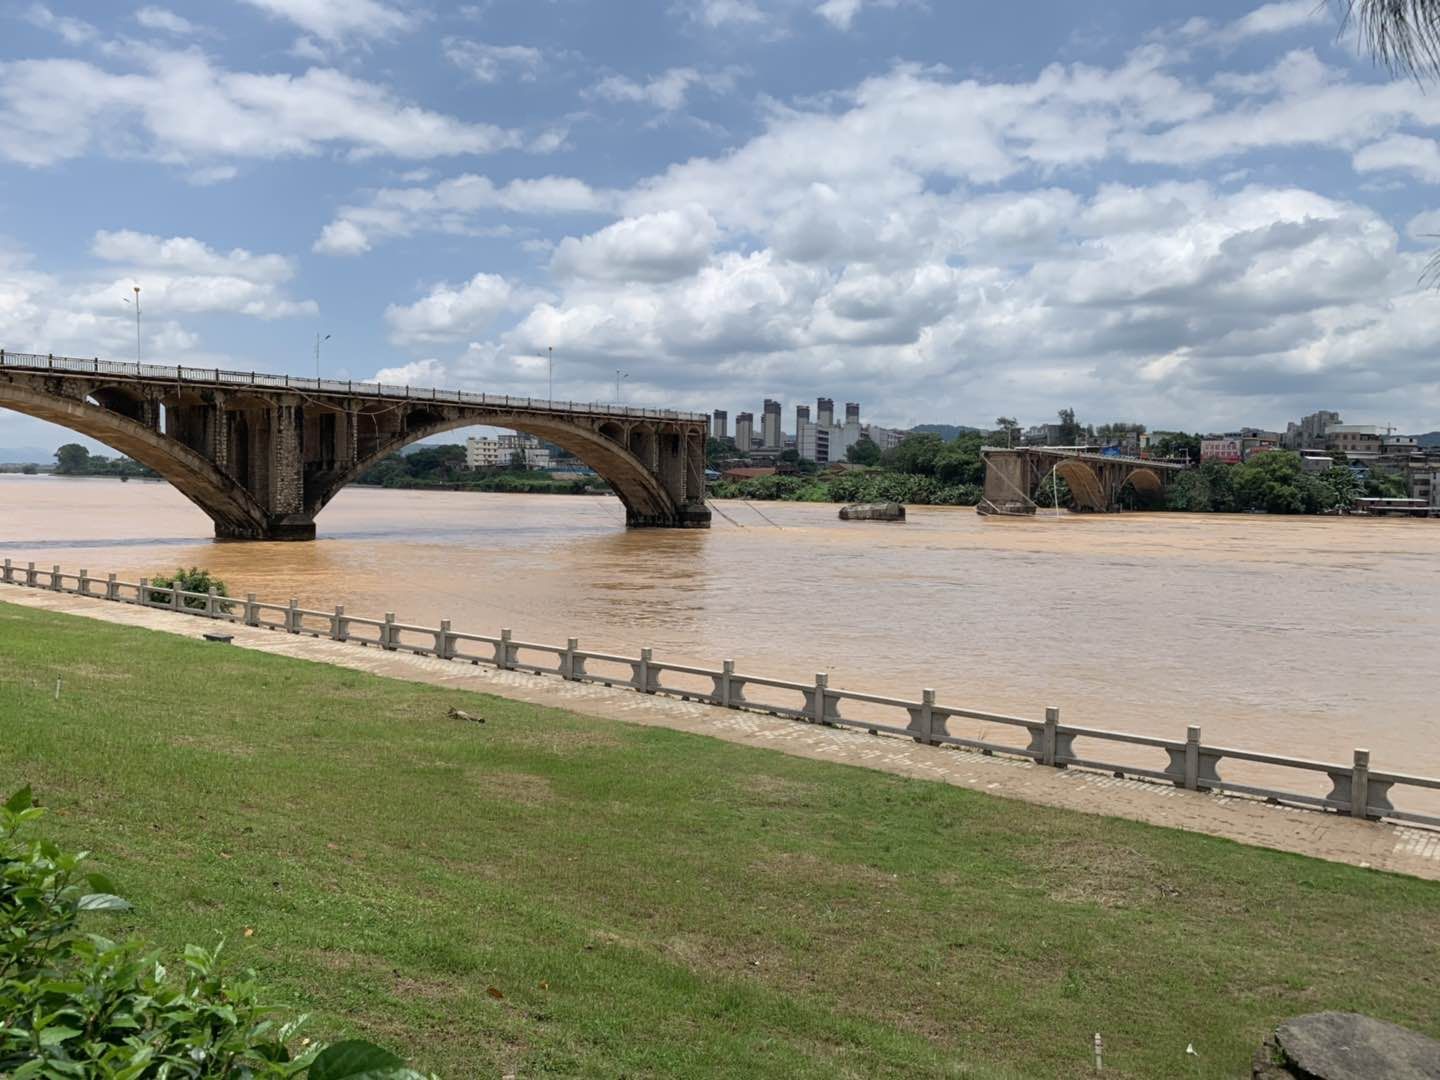  坍塌后的河源东江大桥（紫金桥）中部一个破损的桥墩露出水面。 新京报记者 李阳 摄 